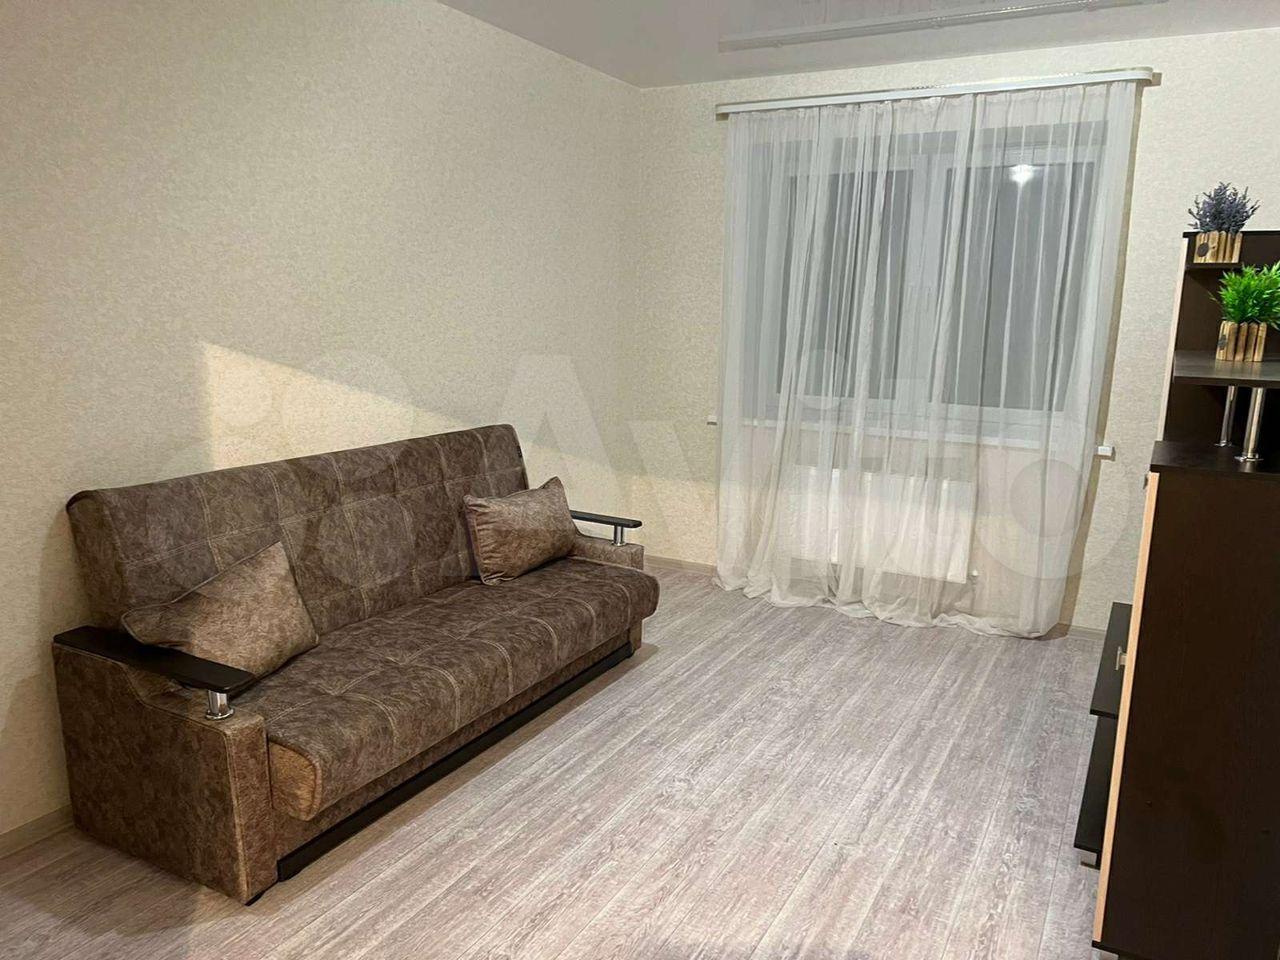 Снять квартиру в южноуральске на длительный срок с мебелью от собственника недорого без залога